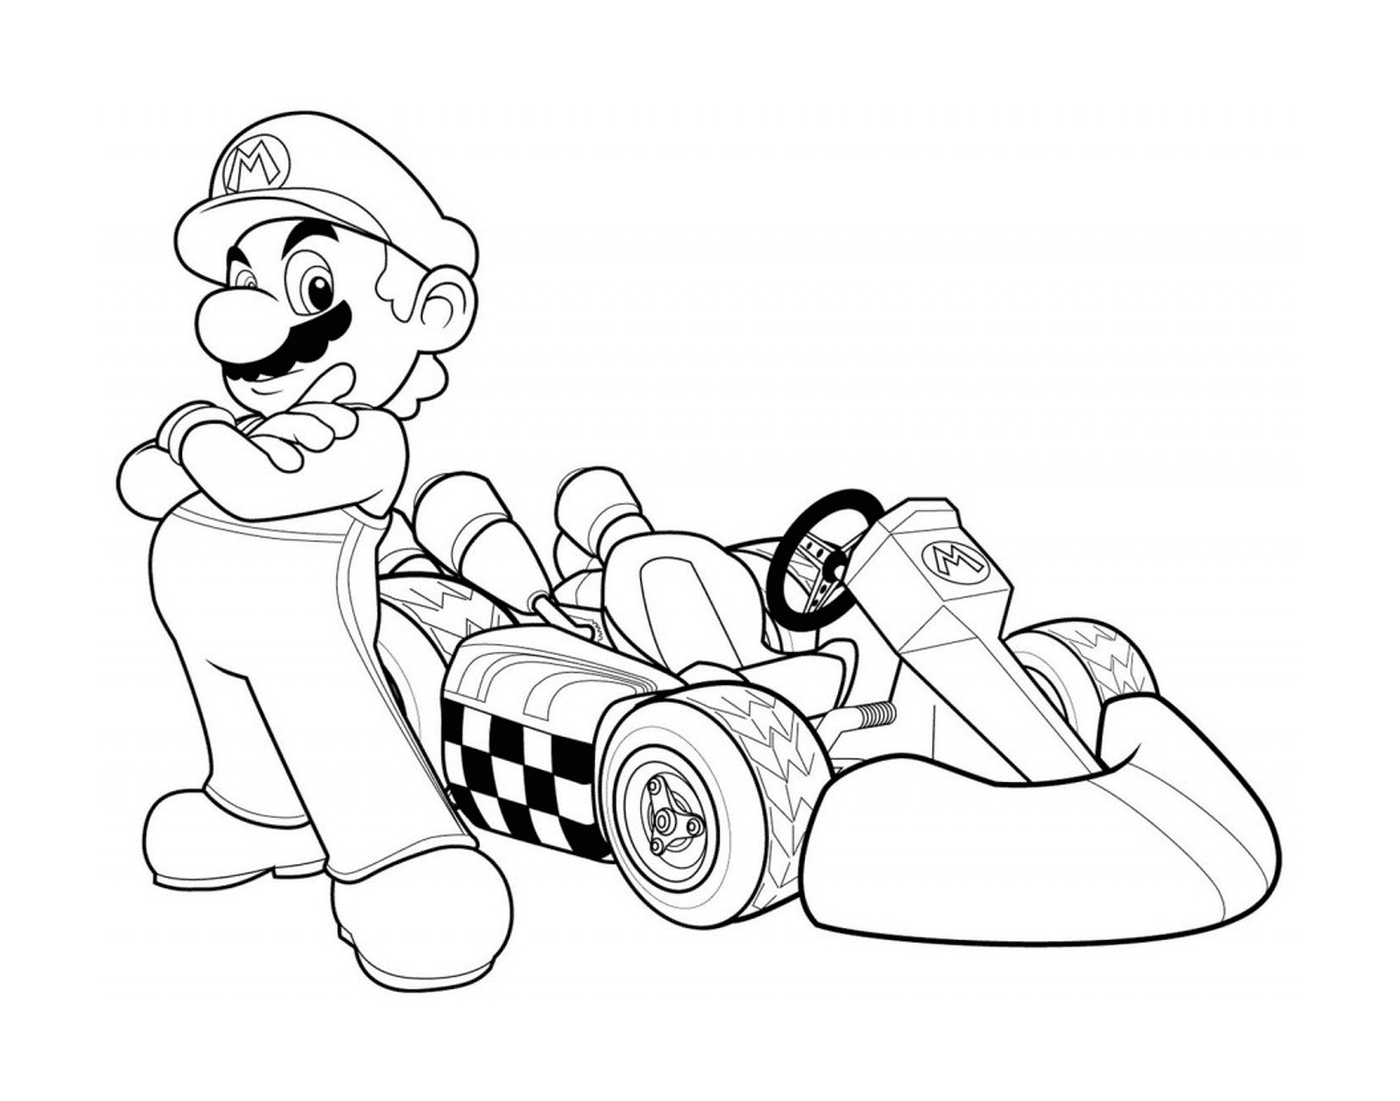  Mario Kart, um carro de Fórmula 1 